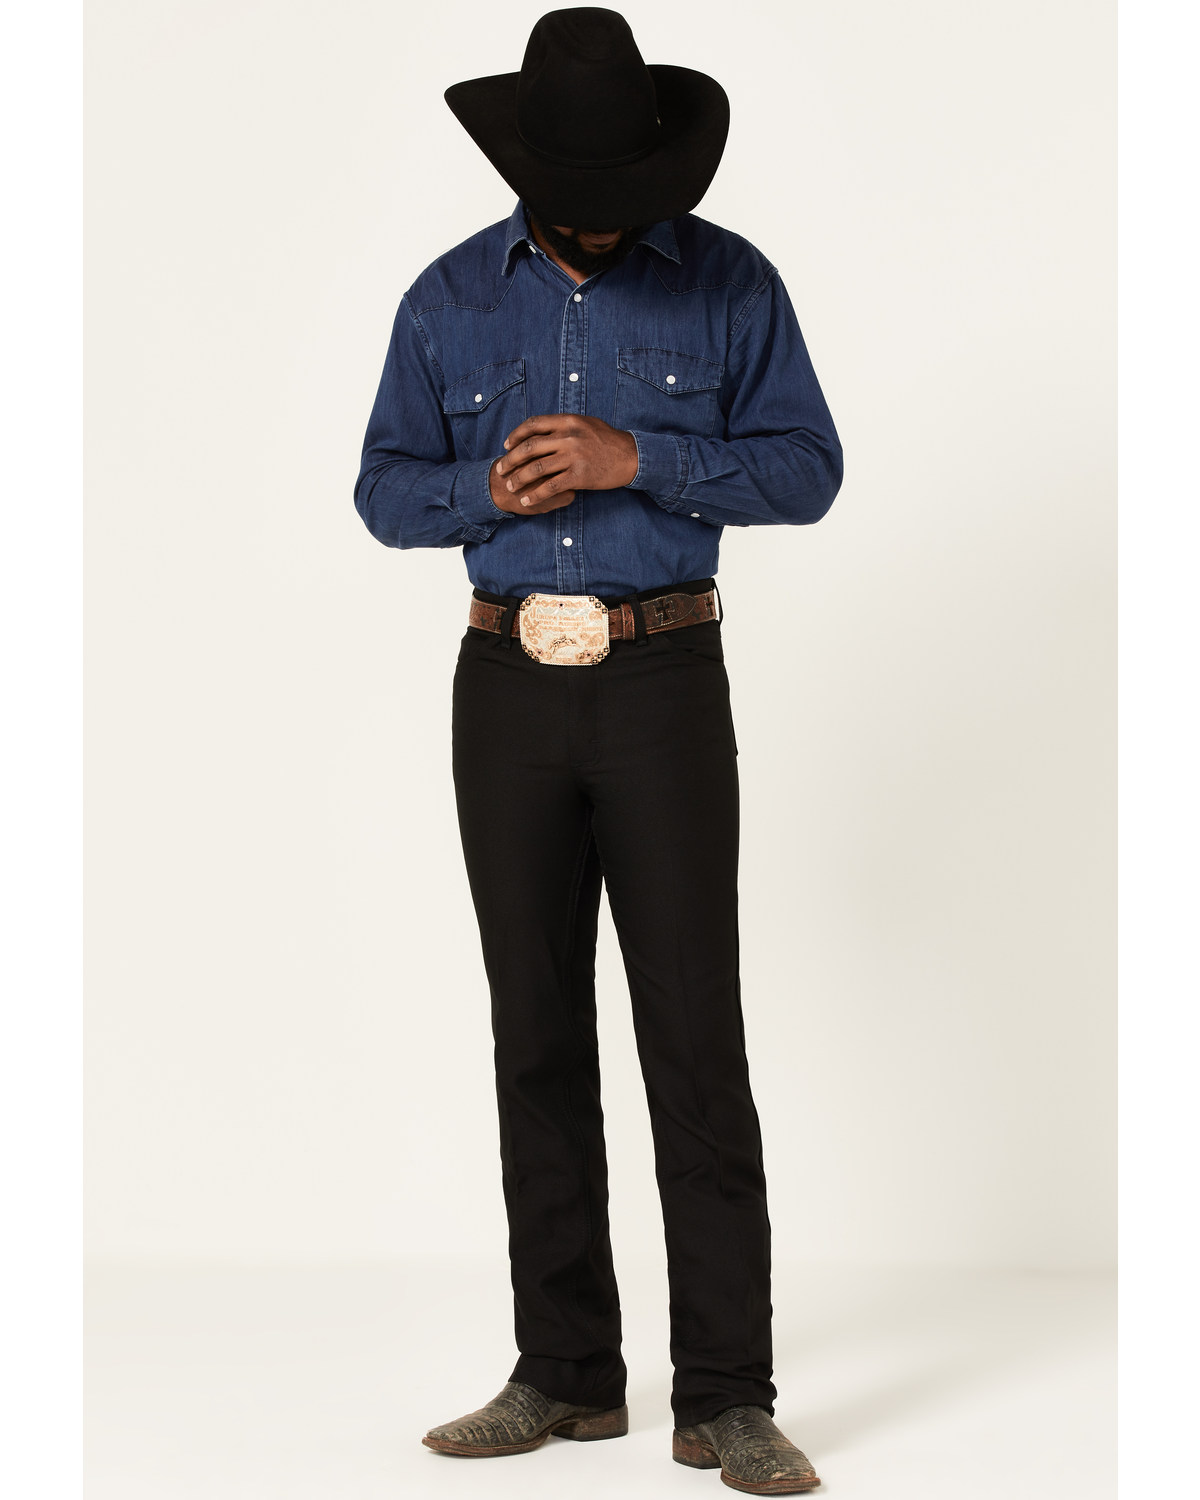 Buy > western dress pants mens > in stock